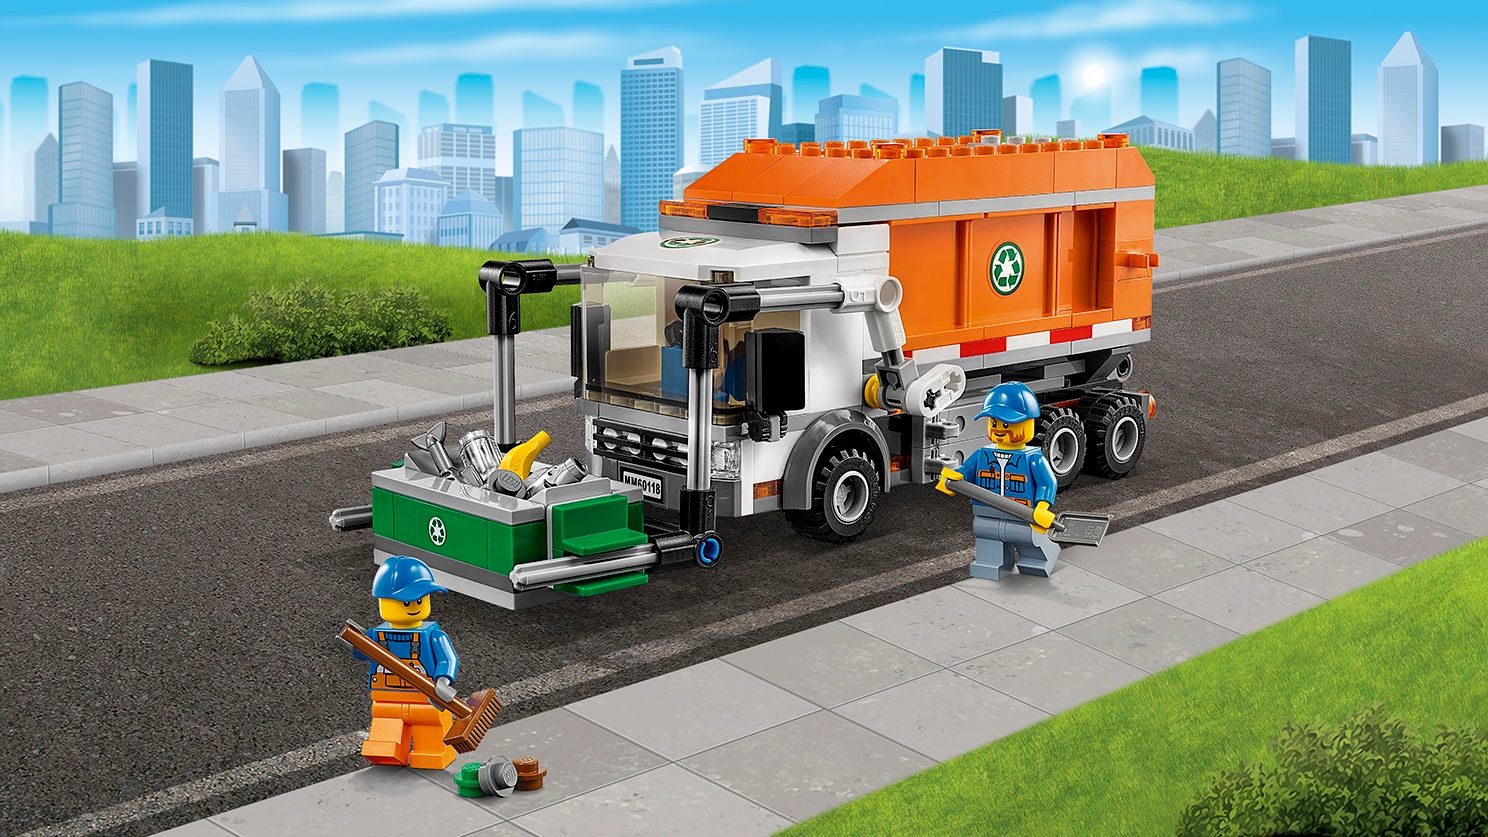 LEGO City Fantastiska fordon sopbil, container och minifigurer – Sopbil 60118